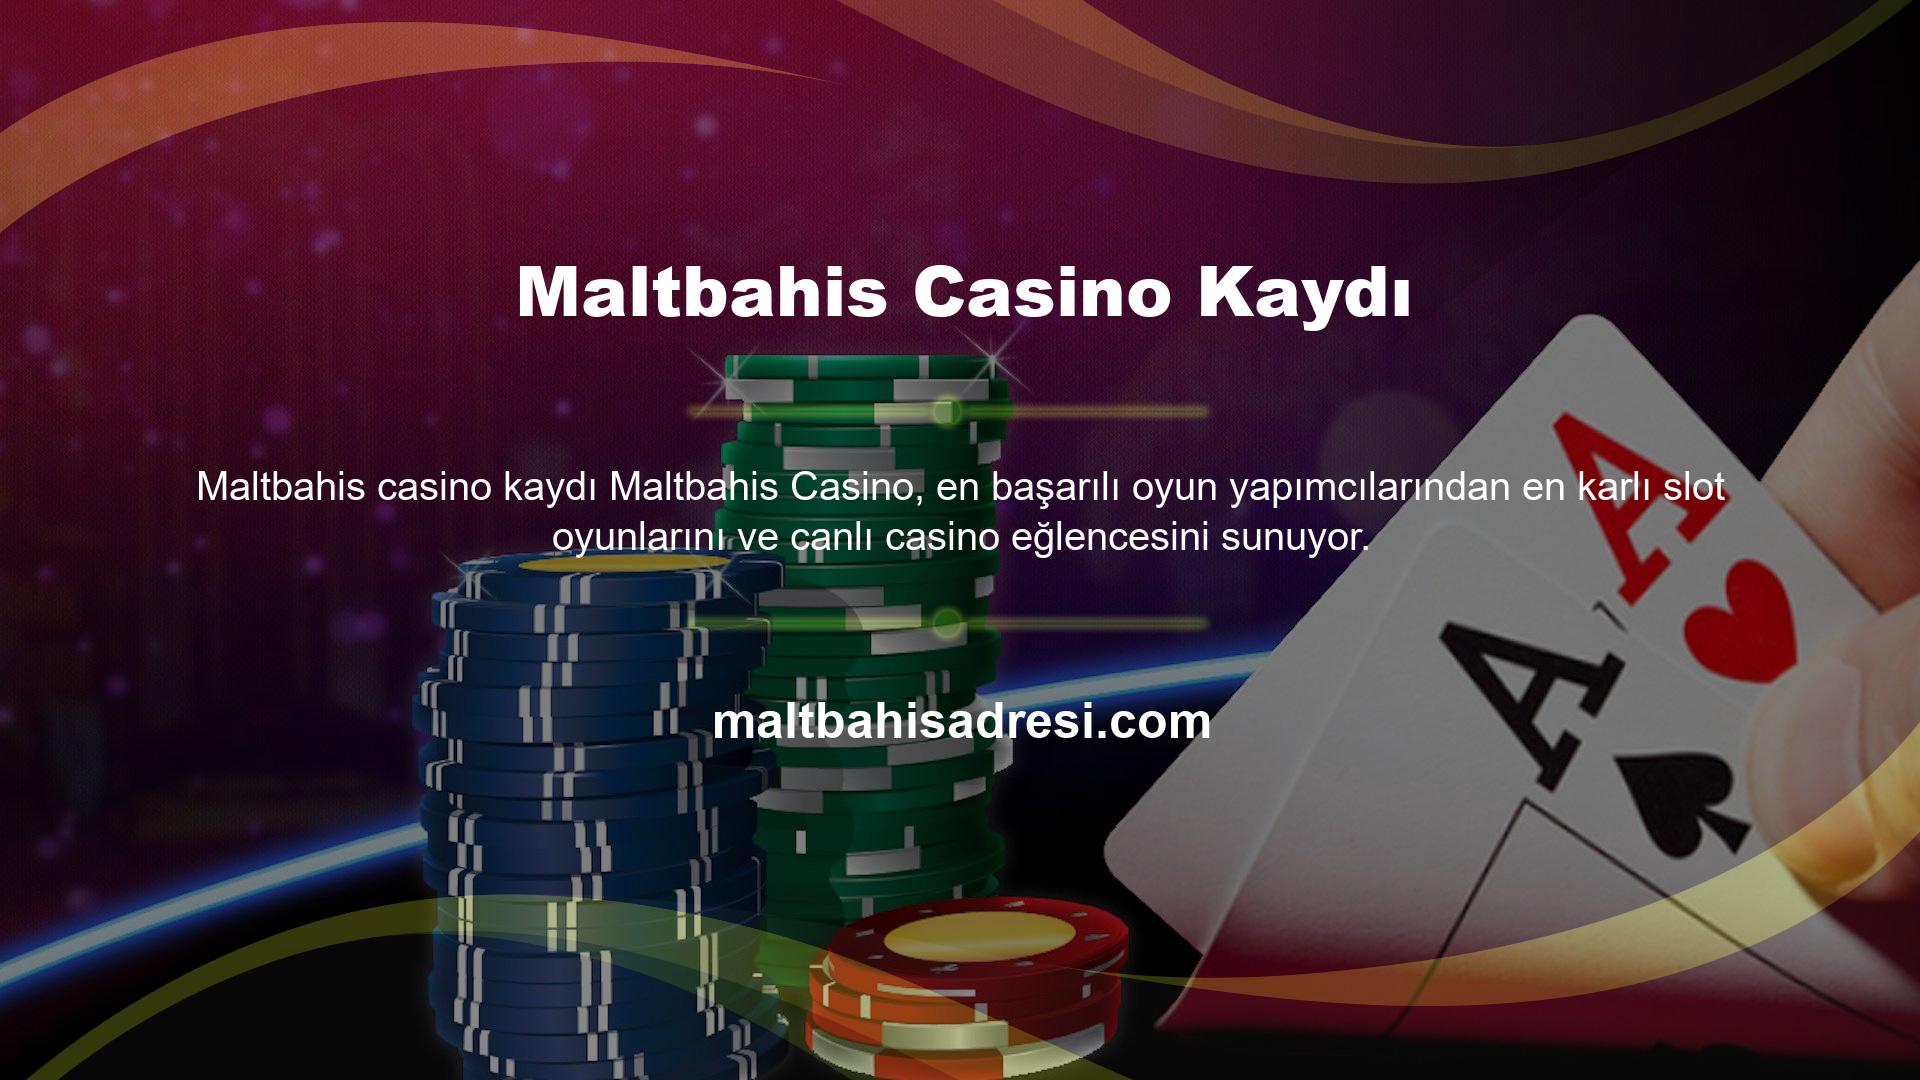 Seçtiğiniz limitler dahilinde profesyonel oyuncular, kaliteli oyunlar ve bahis fırsatları ile Maltbahis casino sistemine üye olabilirsiniz